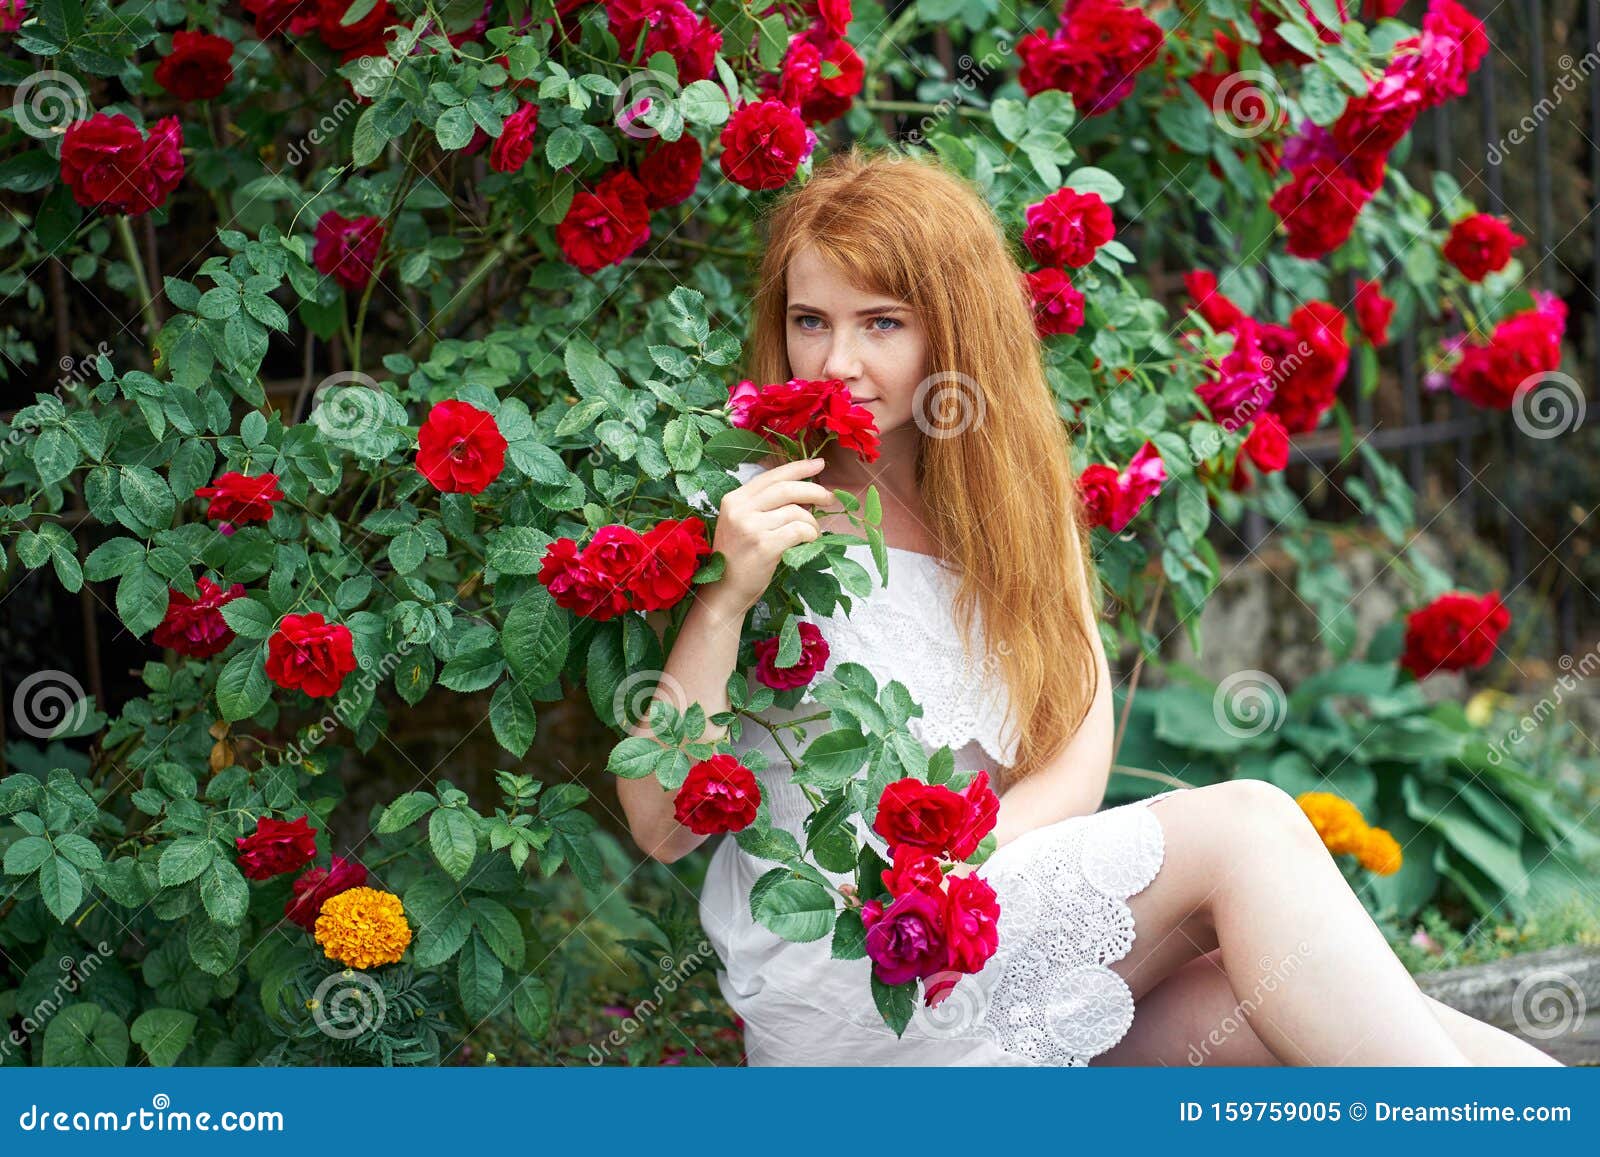 玫瑰花盛开背景中一个漂亮红发女孩的画像户外库存图片 图片包括有户外 玫瑰花盛开背景中一个漂亮红发女孩的画像